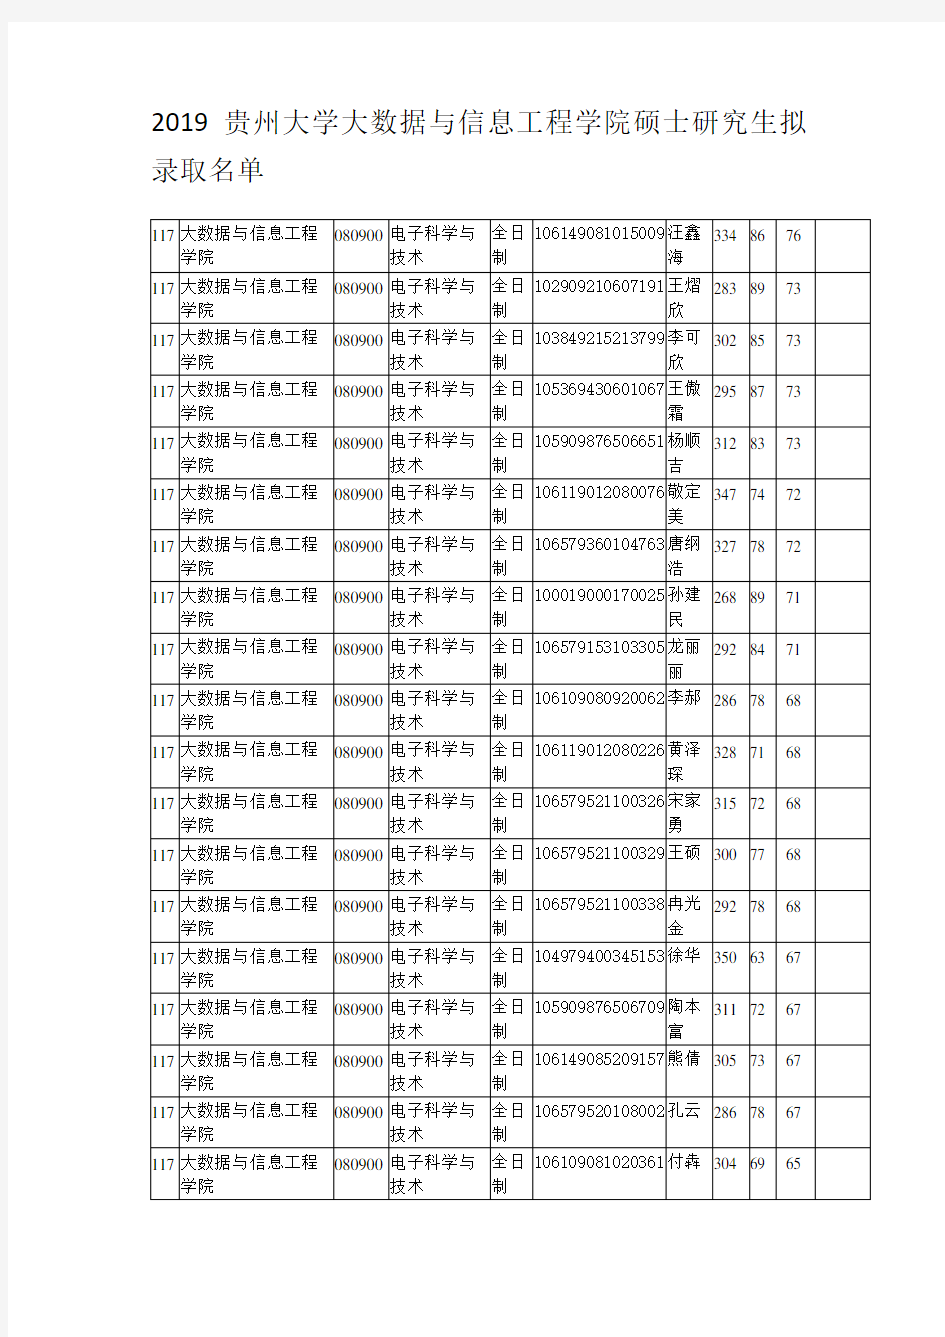 2019贵州大学大数据与信息工程学院硕士研究生拟录取名单